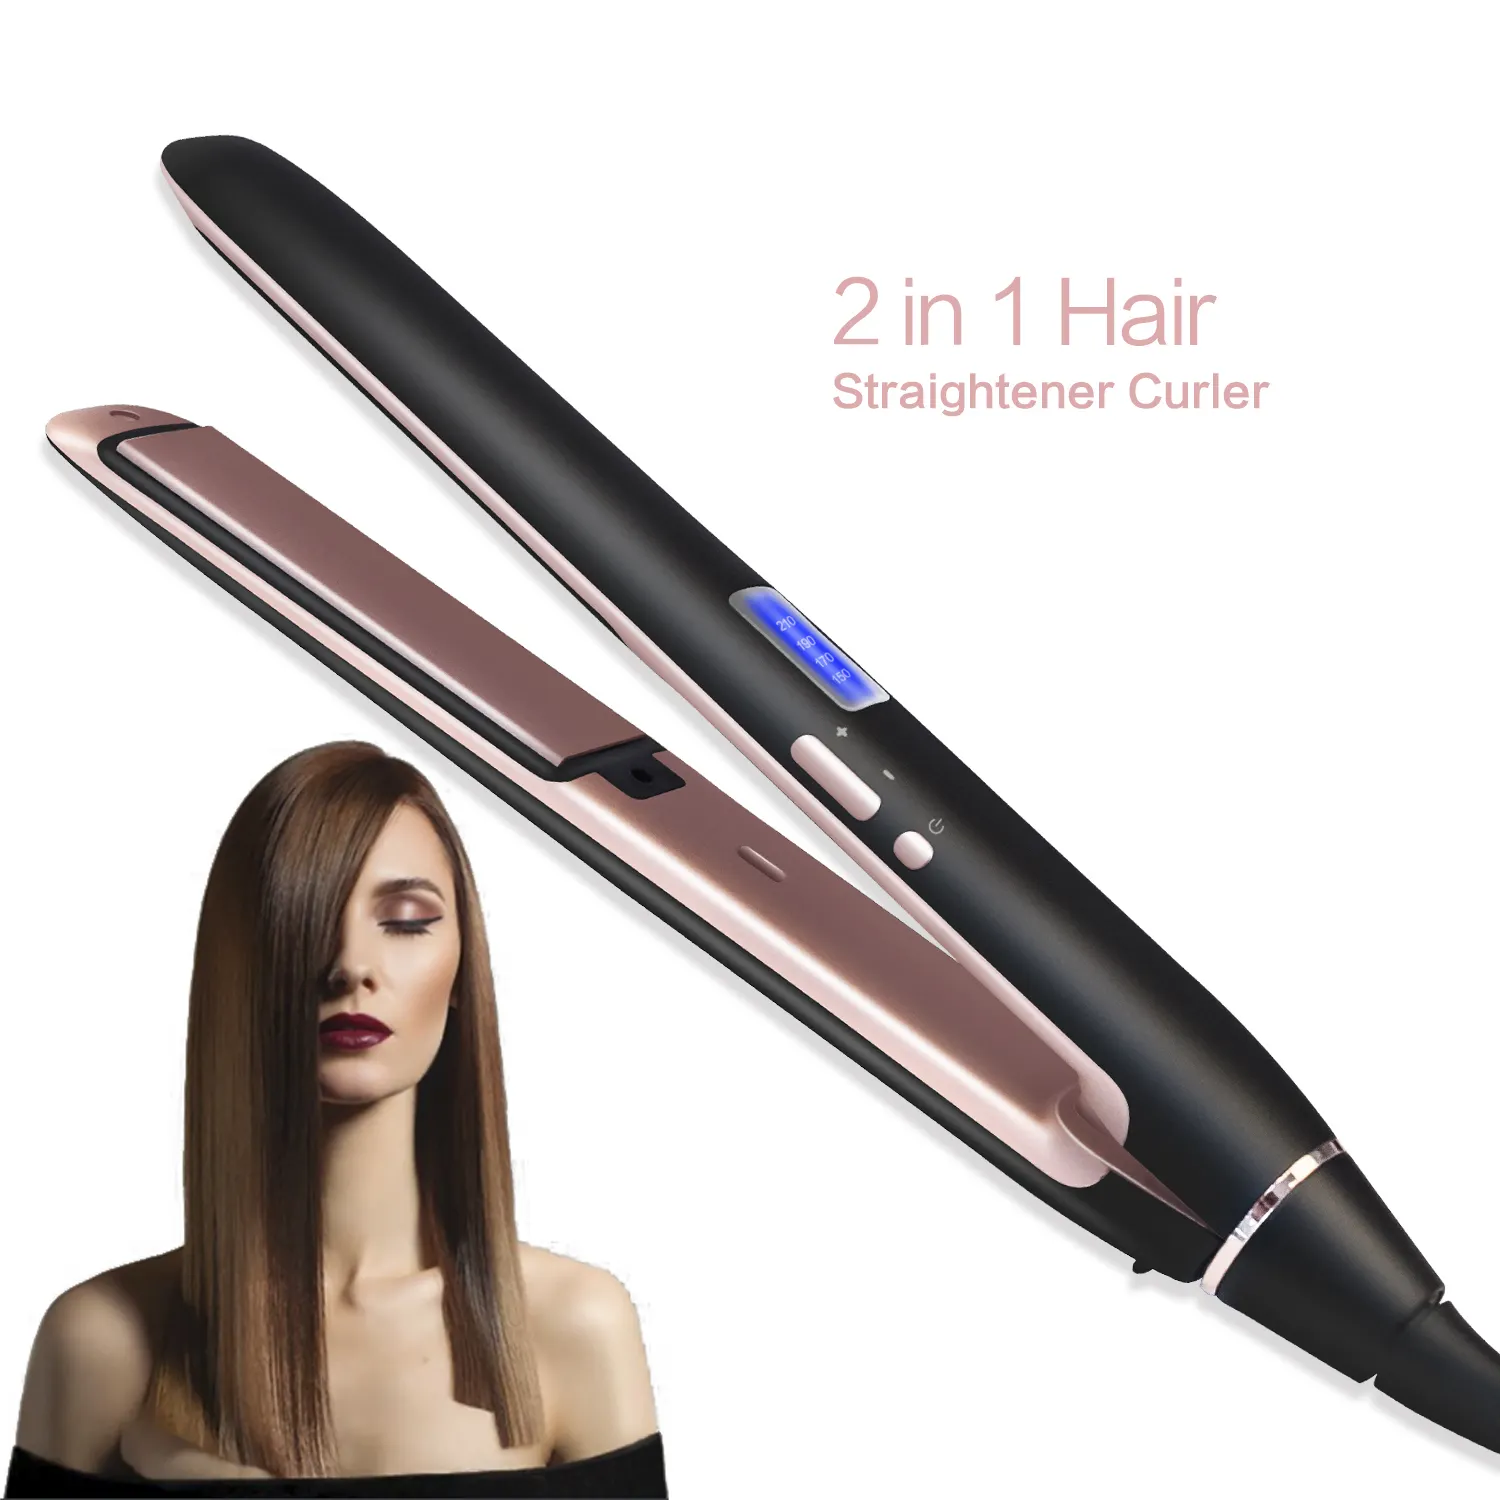 Alisador de cabelo 2 em 1, modelador de cabelo de titânio, profissional, de uso em salão de beleza, ondulador e ferro reto